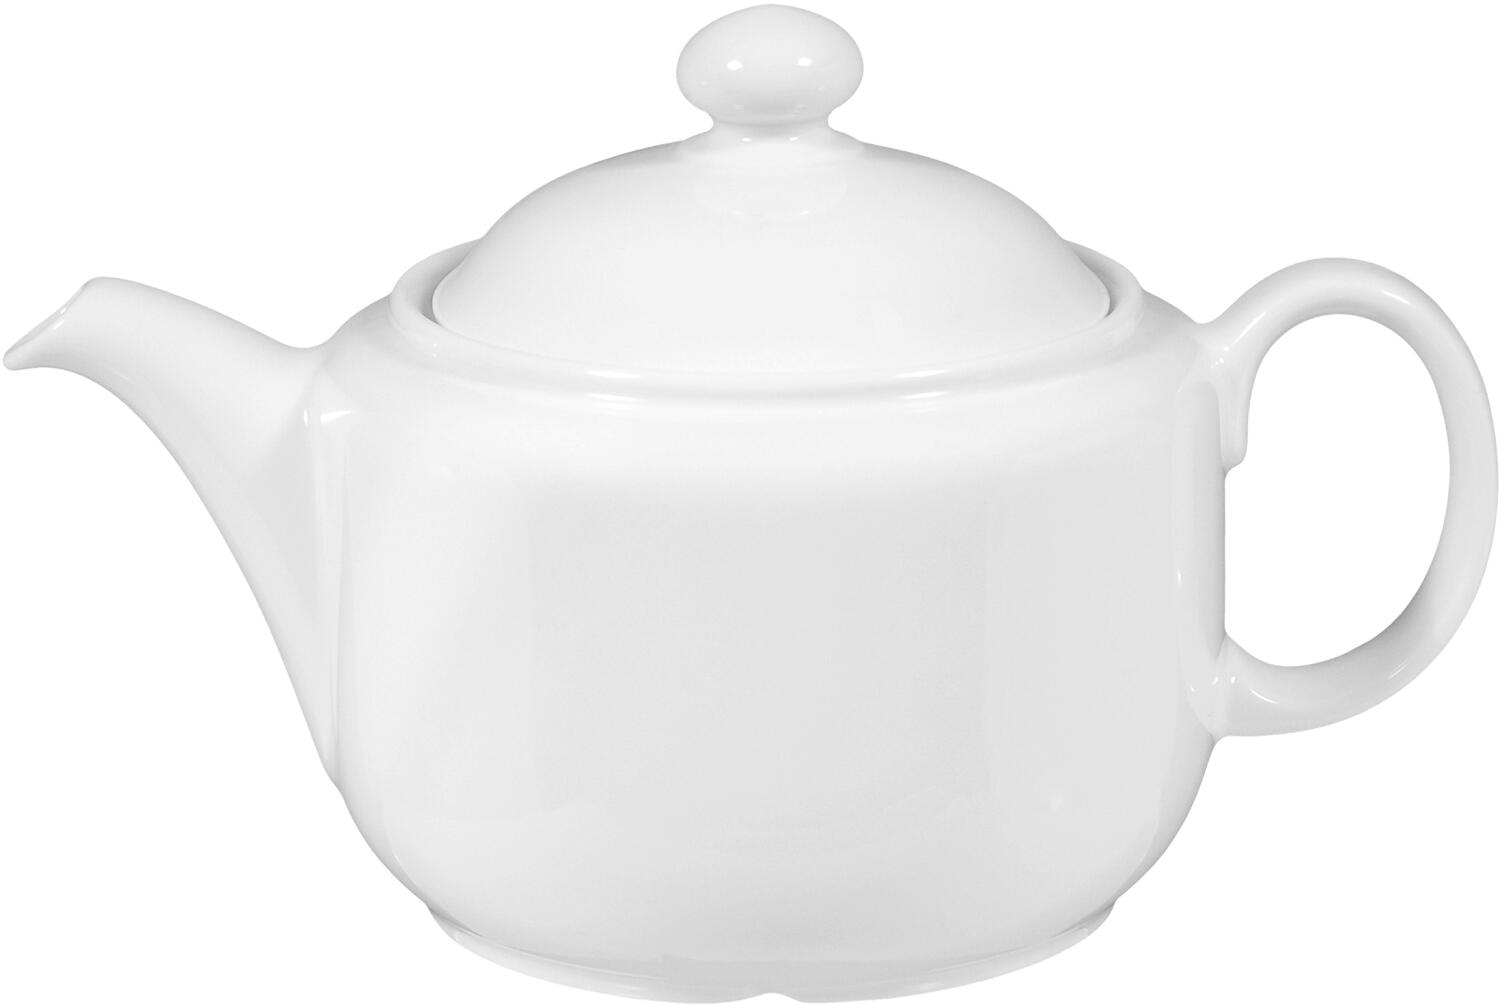 Seltmann Weiden Compact Teekanne 1,10 l, weiß bei KochForm